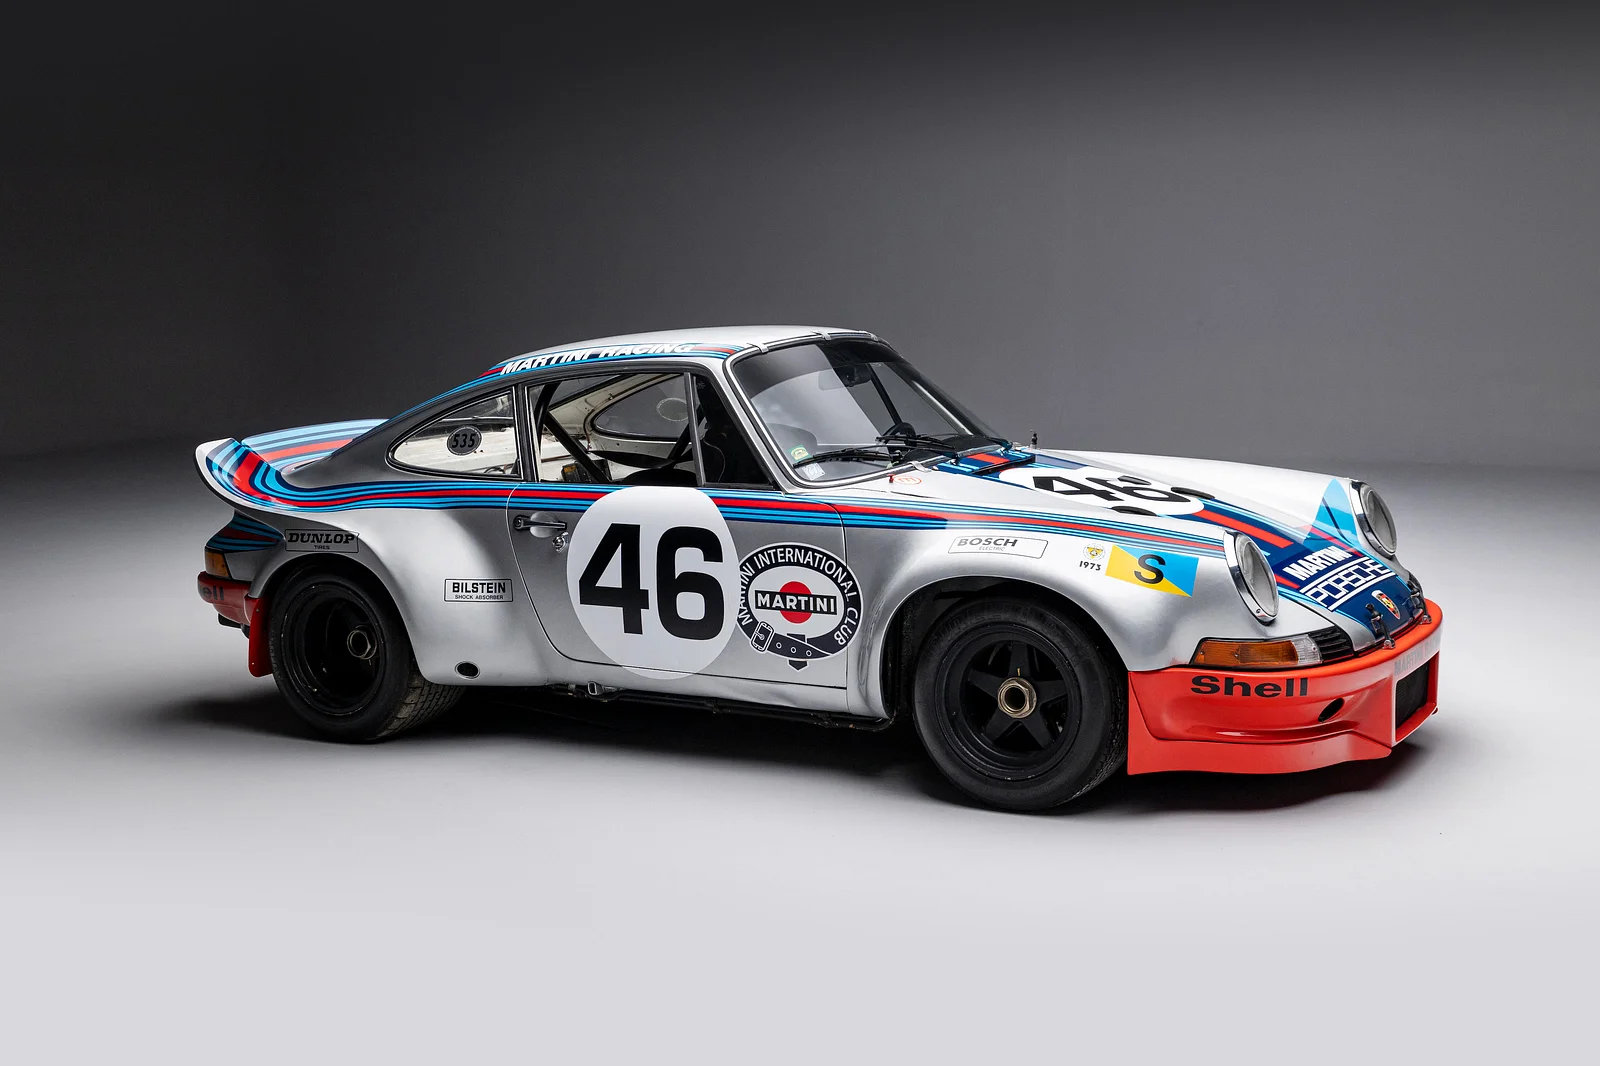 xe dua huyen thoai Porsche Carrera RSR Martini Racing 197329